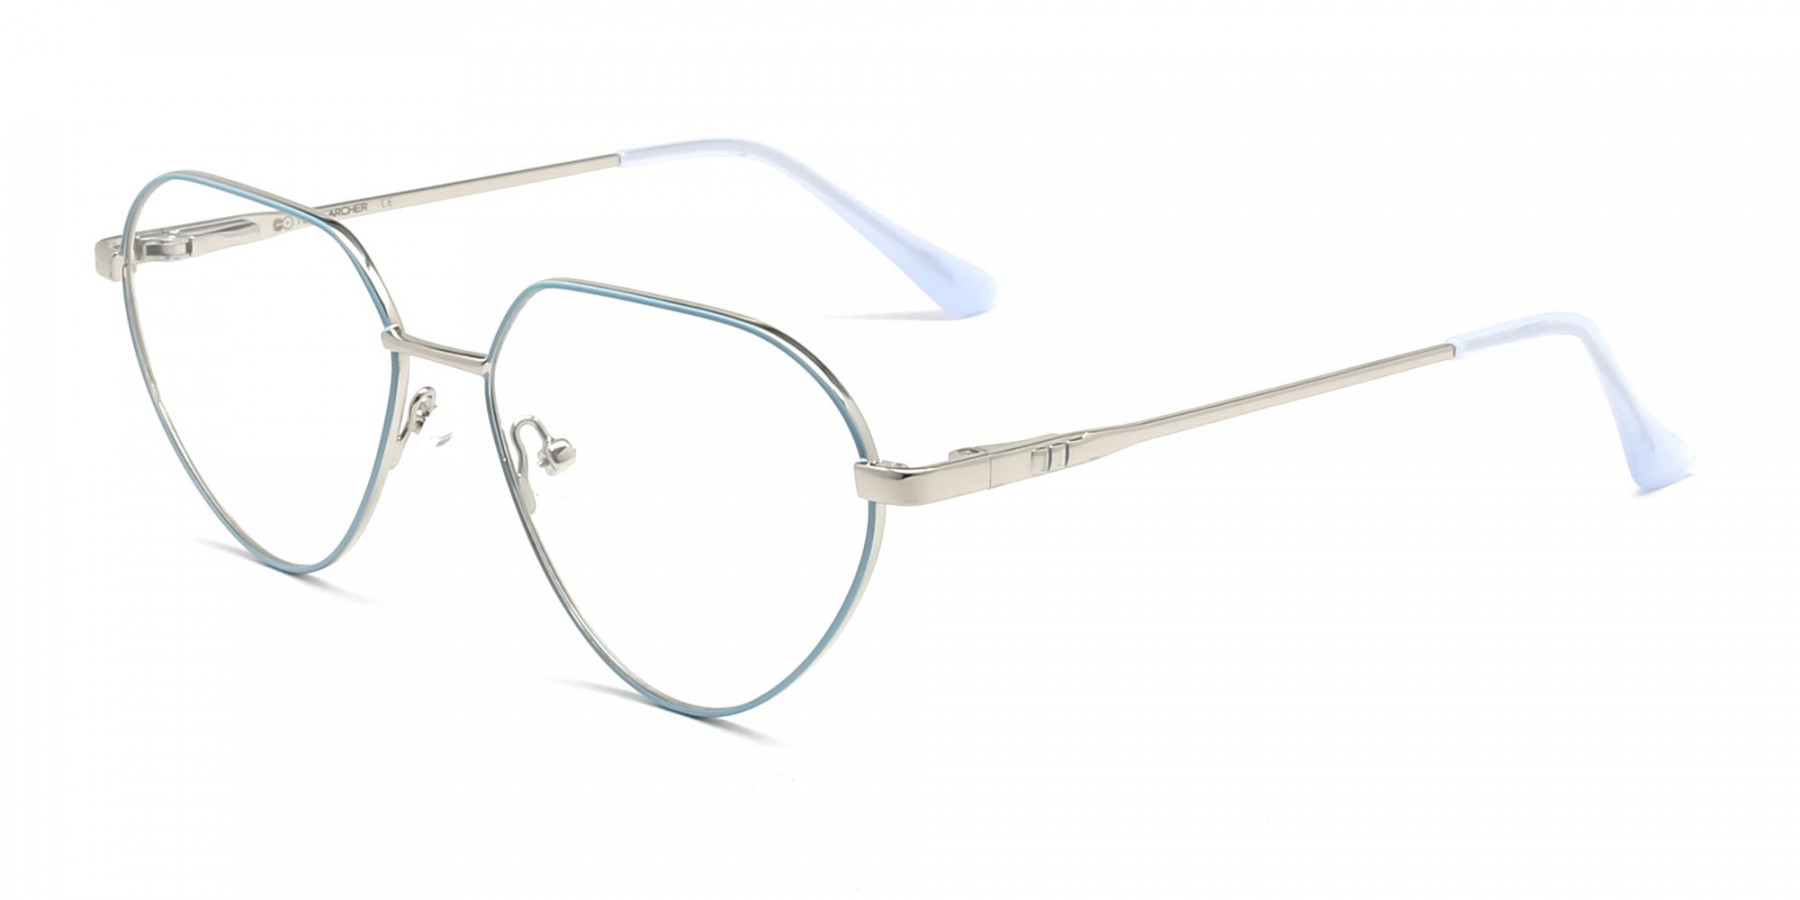 HOVE 4 - Thin Frame Aviator Glasses For Men & Women | Specscart.®